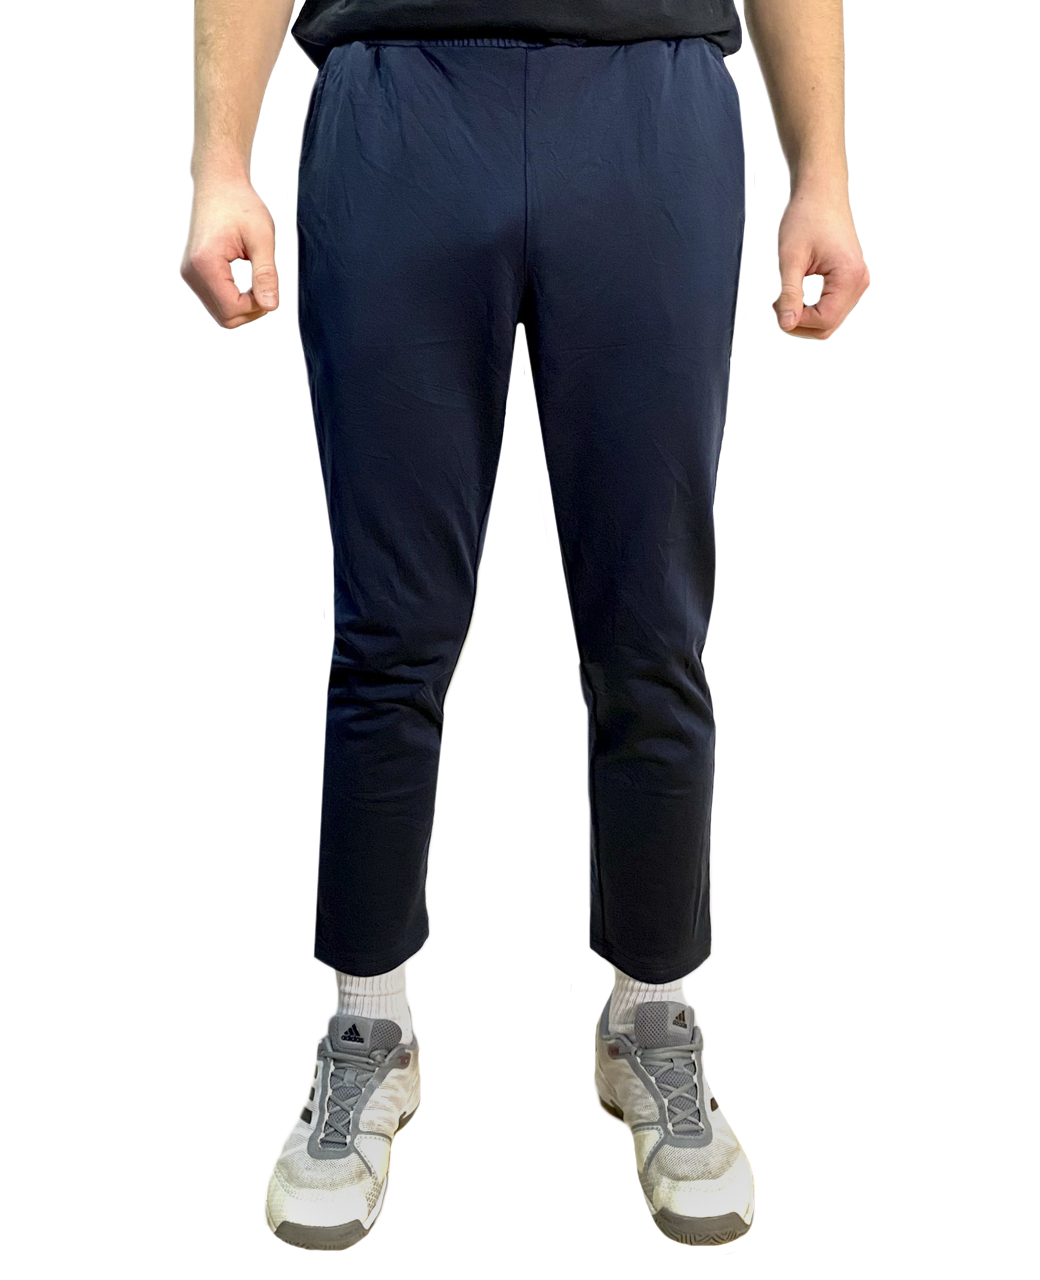 Мужские спортивные штаны синего цвета №2001